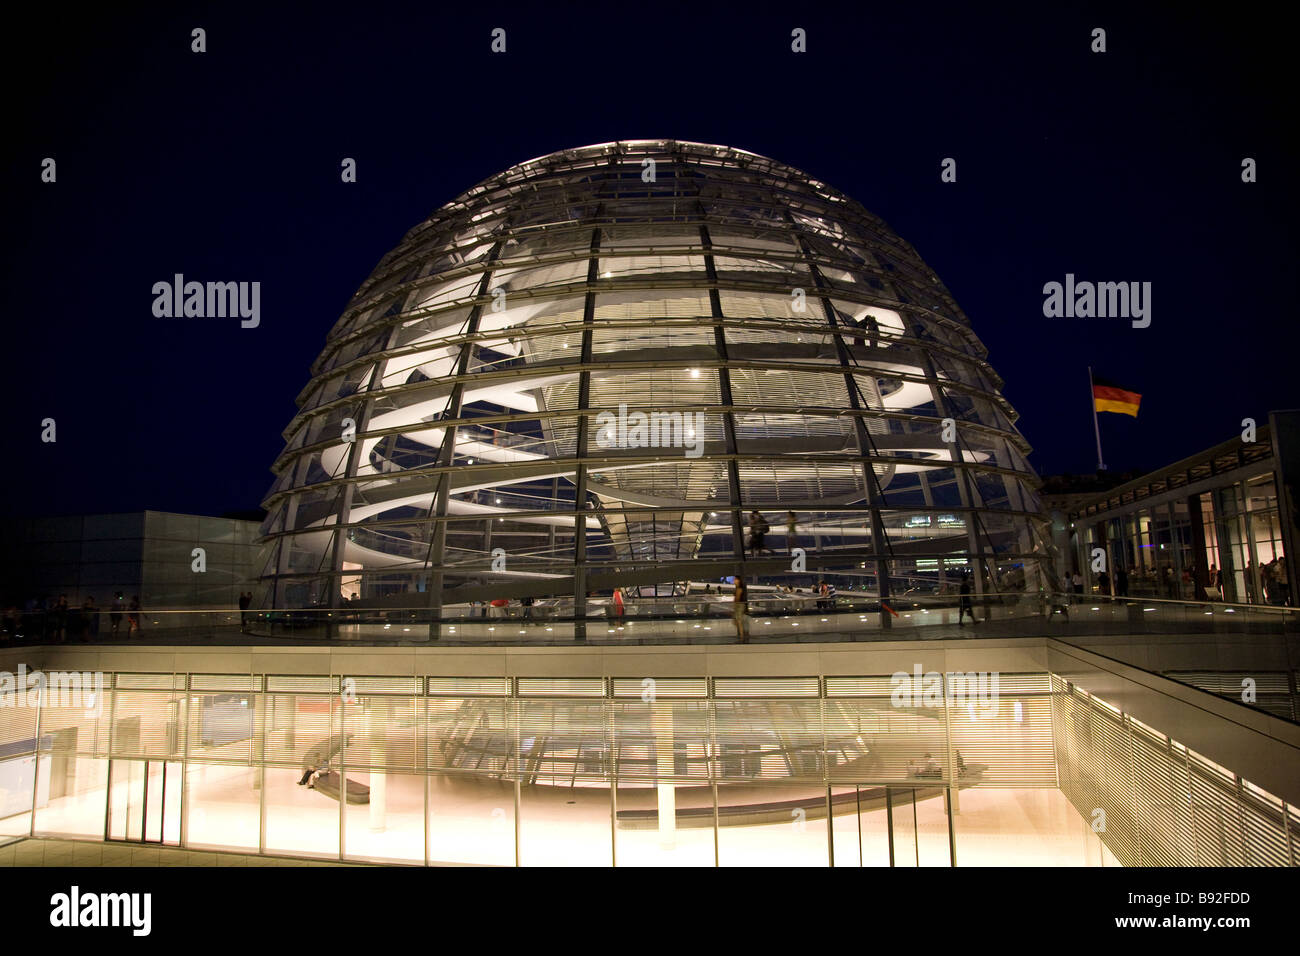 La cupola di vetro in cima al Reichstag di notte dove i visitatori possono osservare il Bundestag la Camera Bassa del parlamento tedesco Foto Stock